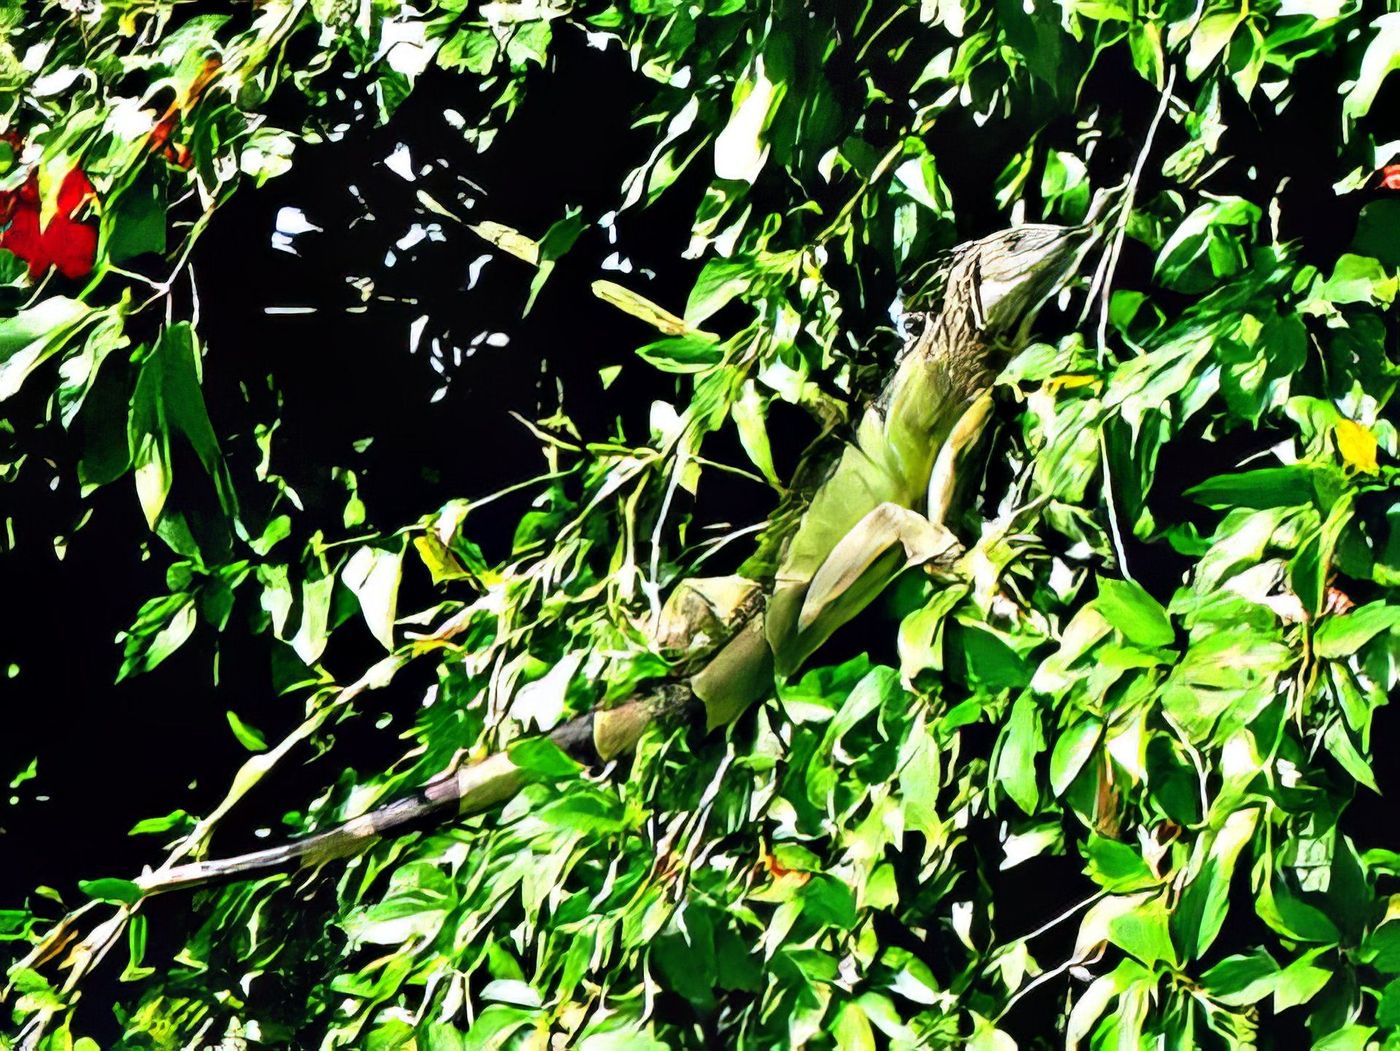 Iguane près de Liberia